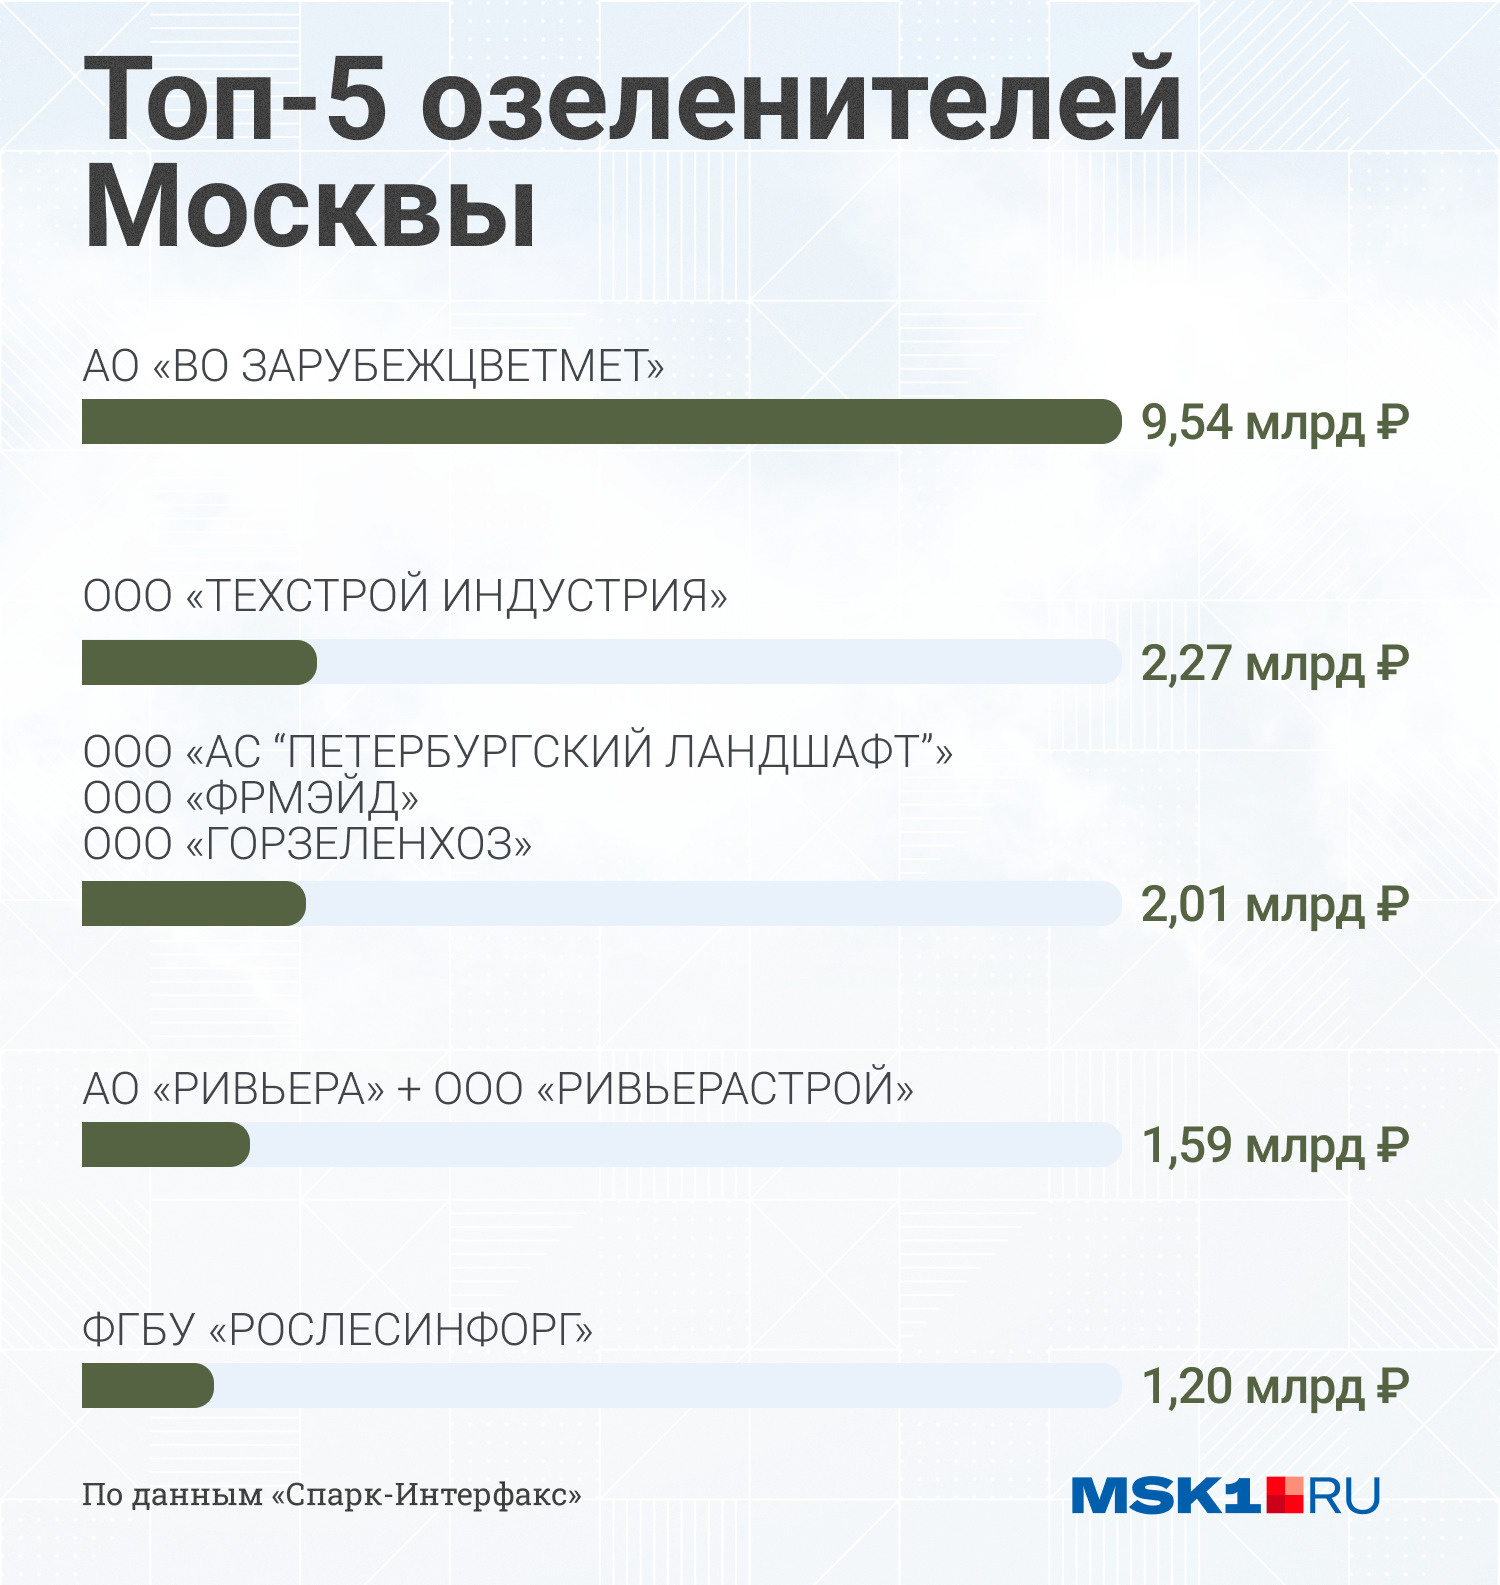 Крупнейшие подрядчики, которые озеленяют Москву